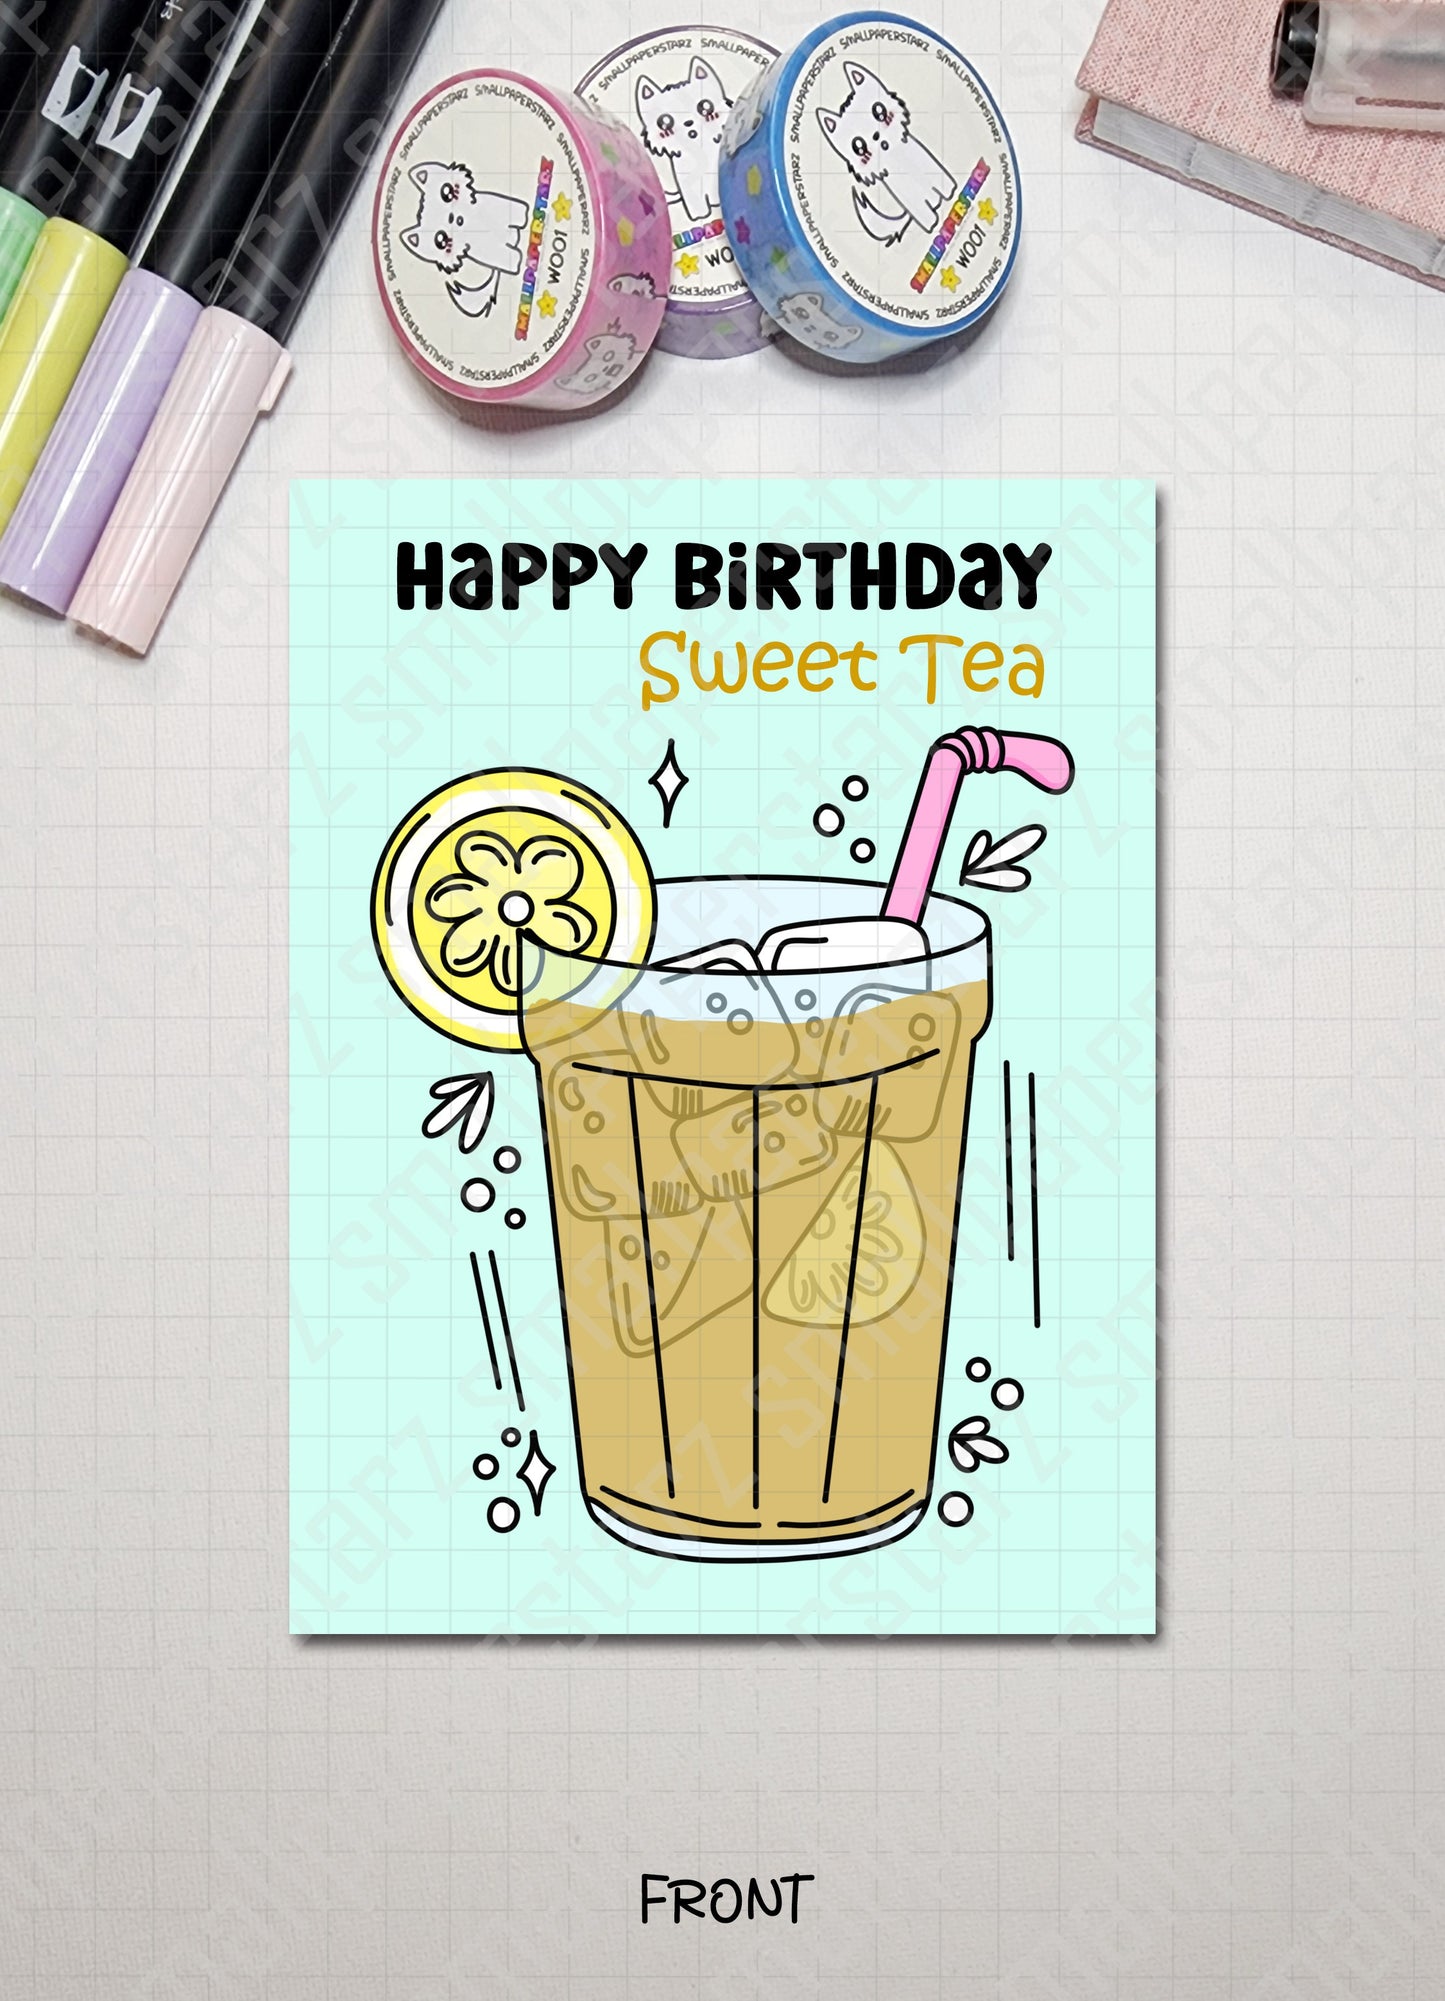 G018 - Happy Birthday Sweet Tea (Sweetie) Blank Greeting Card